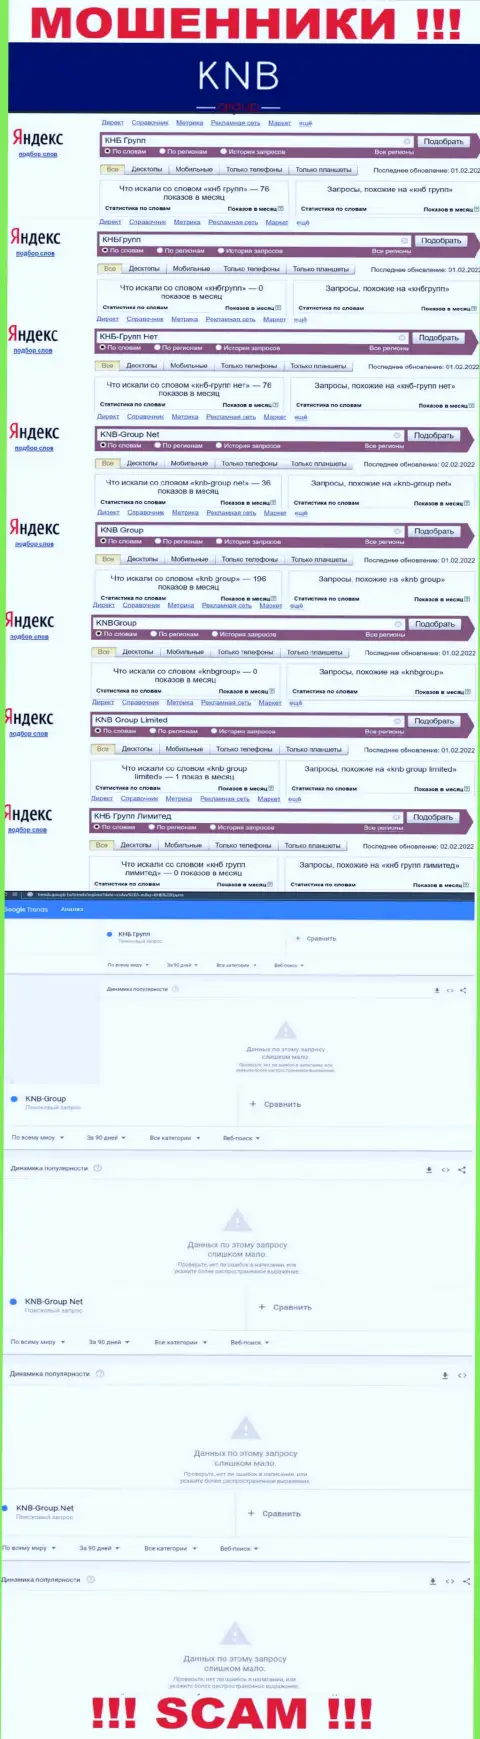 Скриншот результата запросов по жульнической компании KNB-Group Net